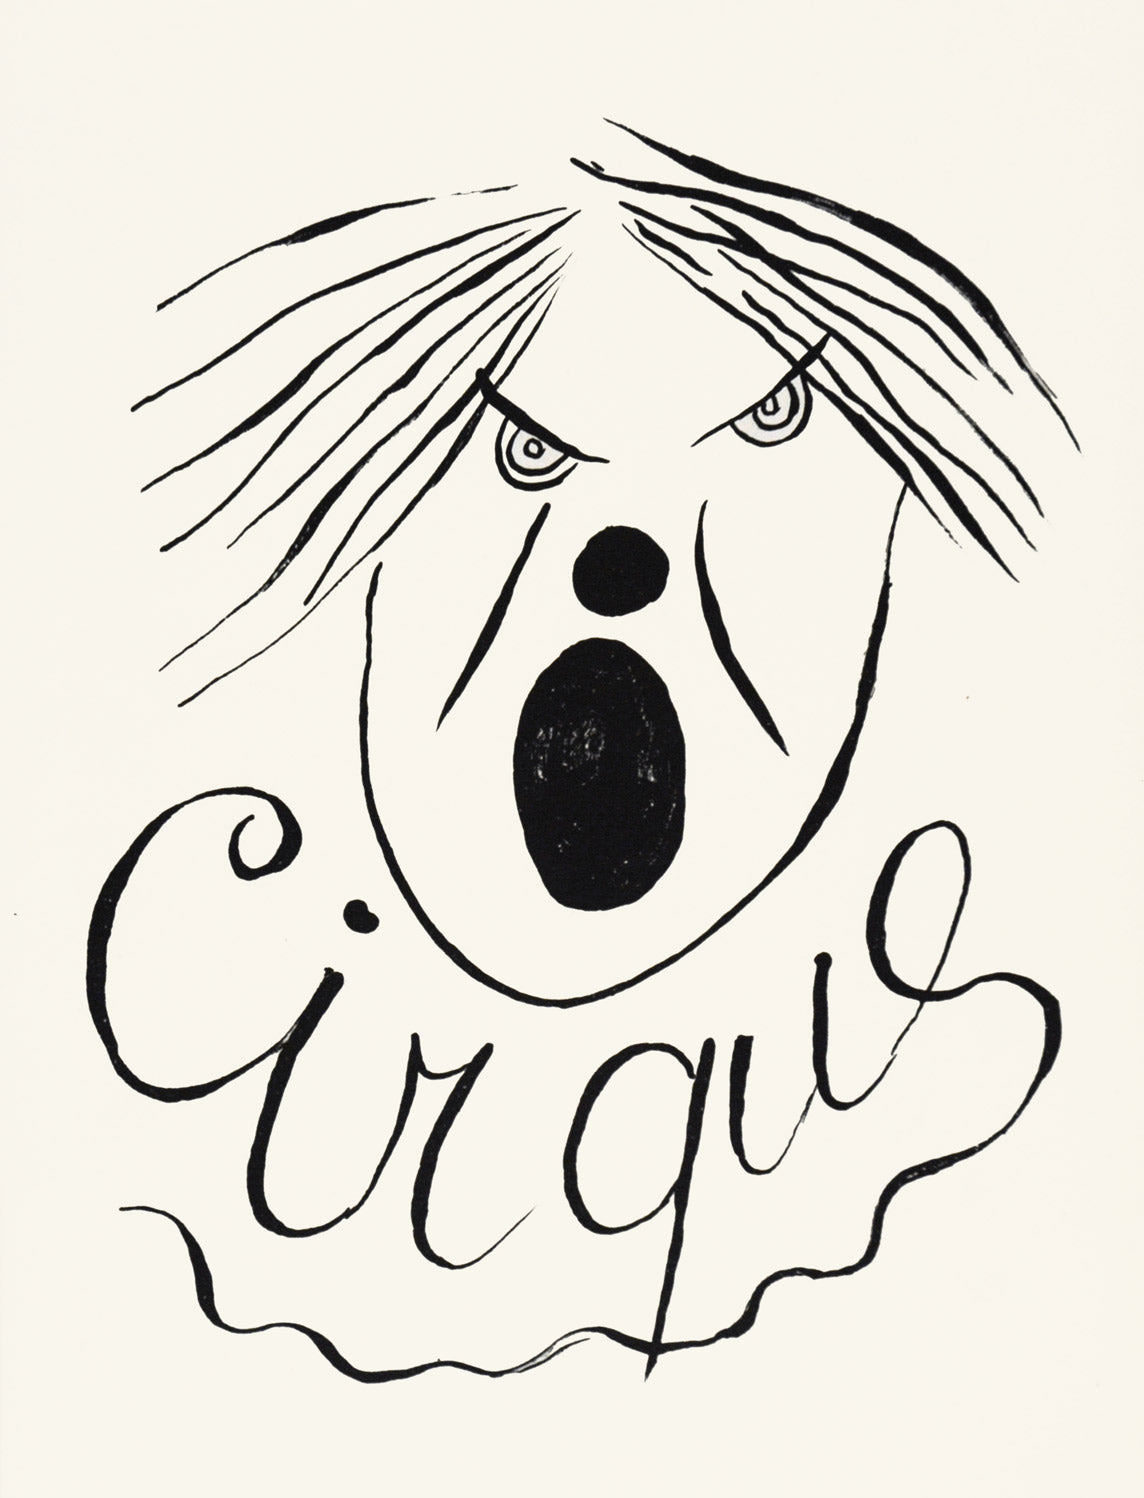 Cirque (106)